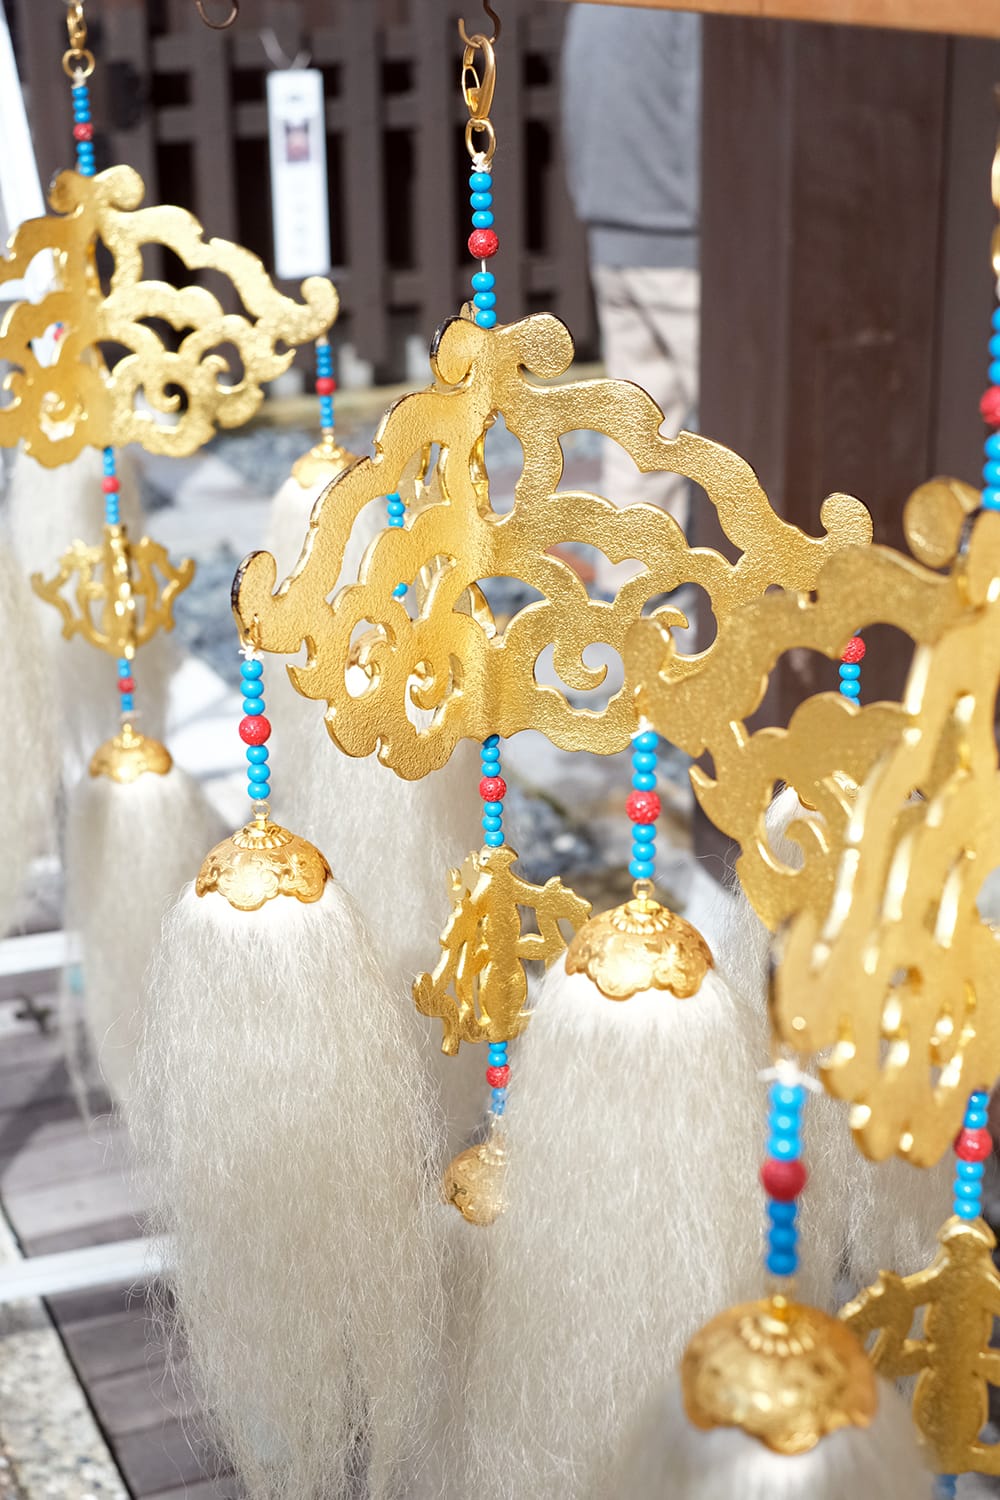 高山祭の屋台 行神台の瓔珞に白い毛房